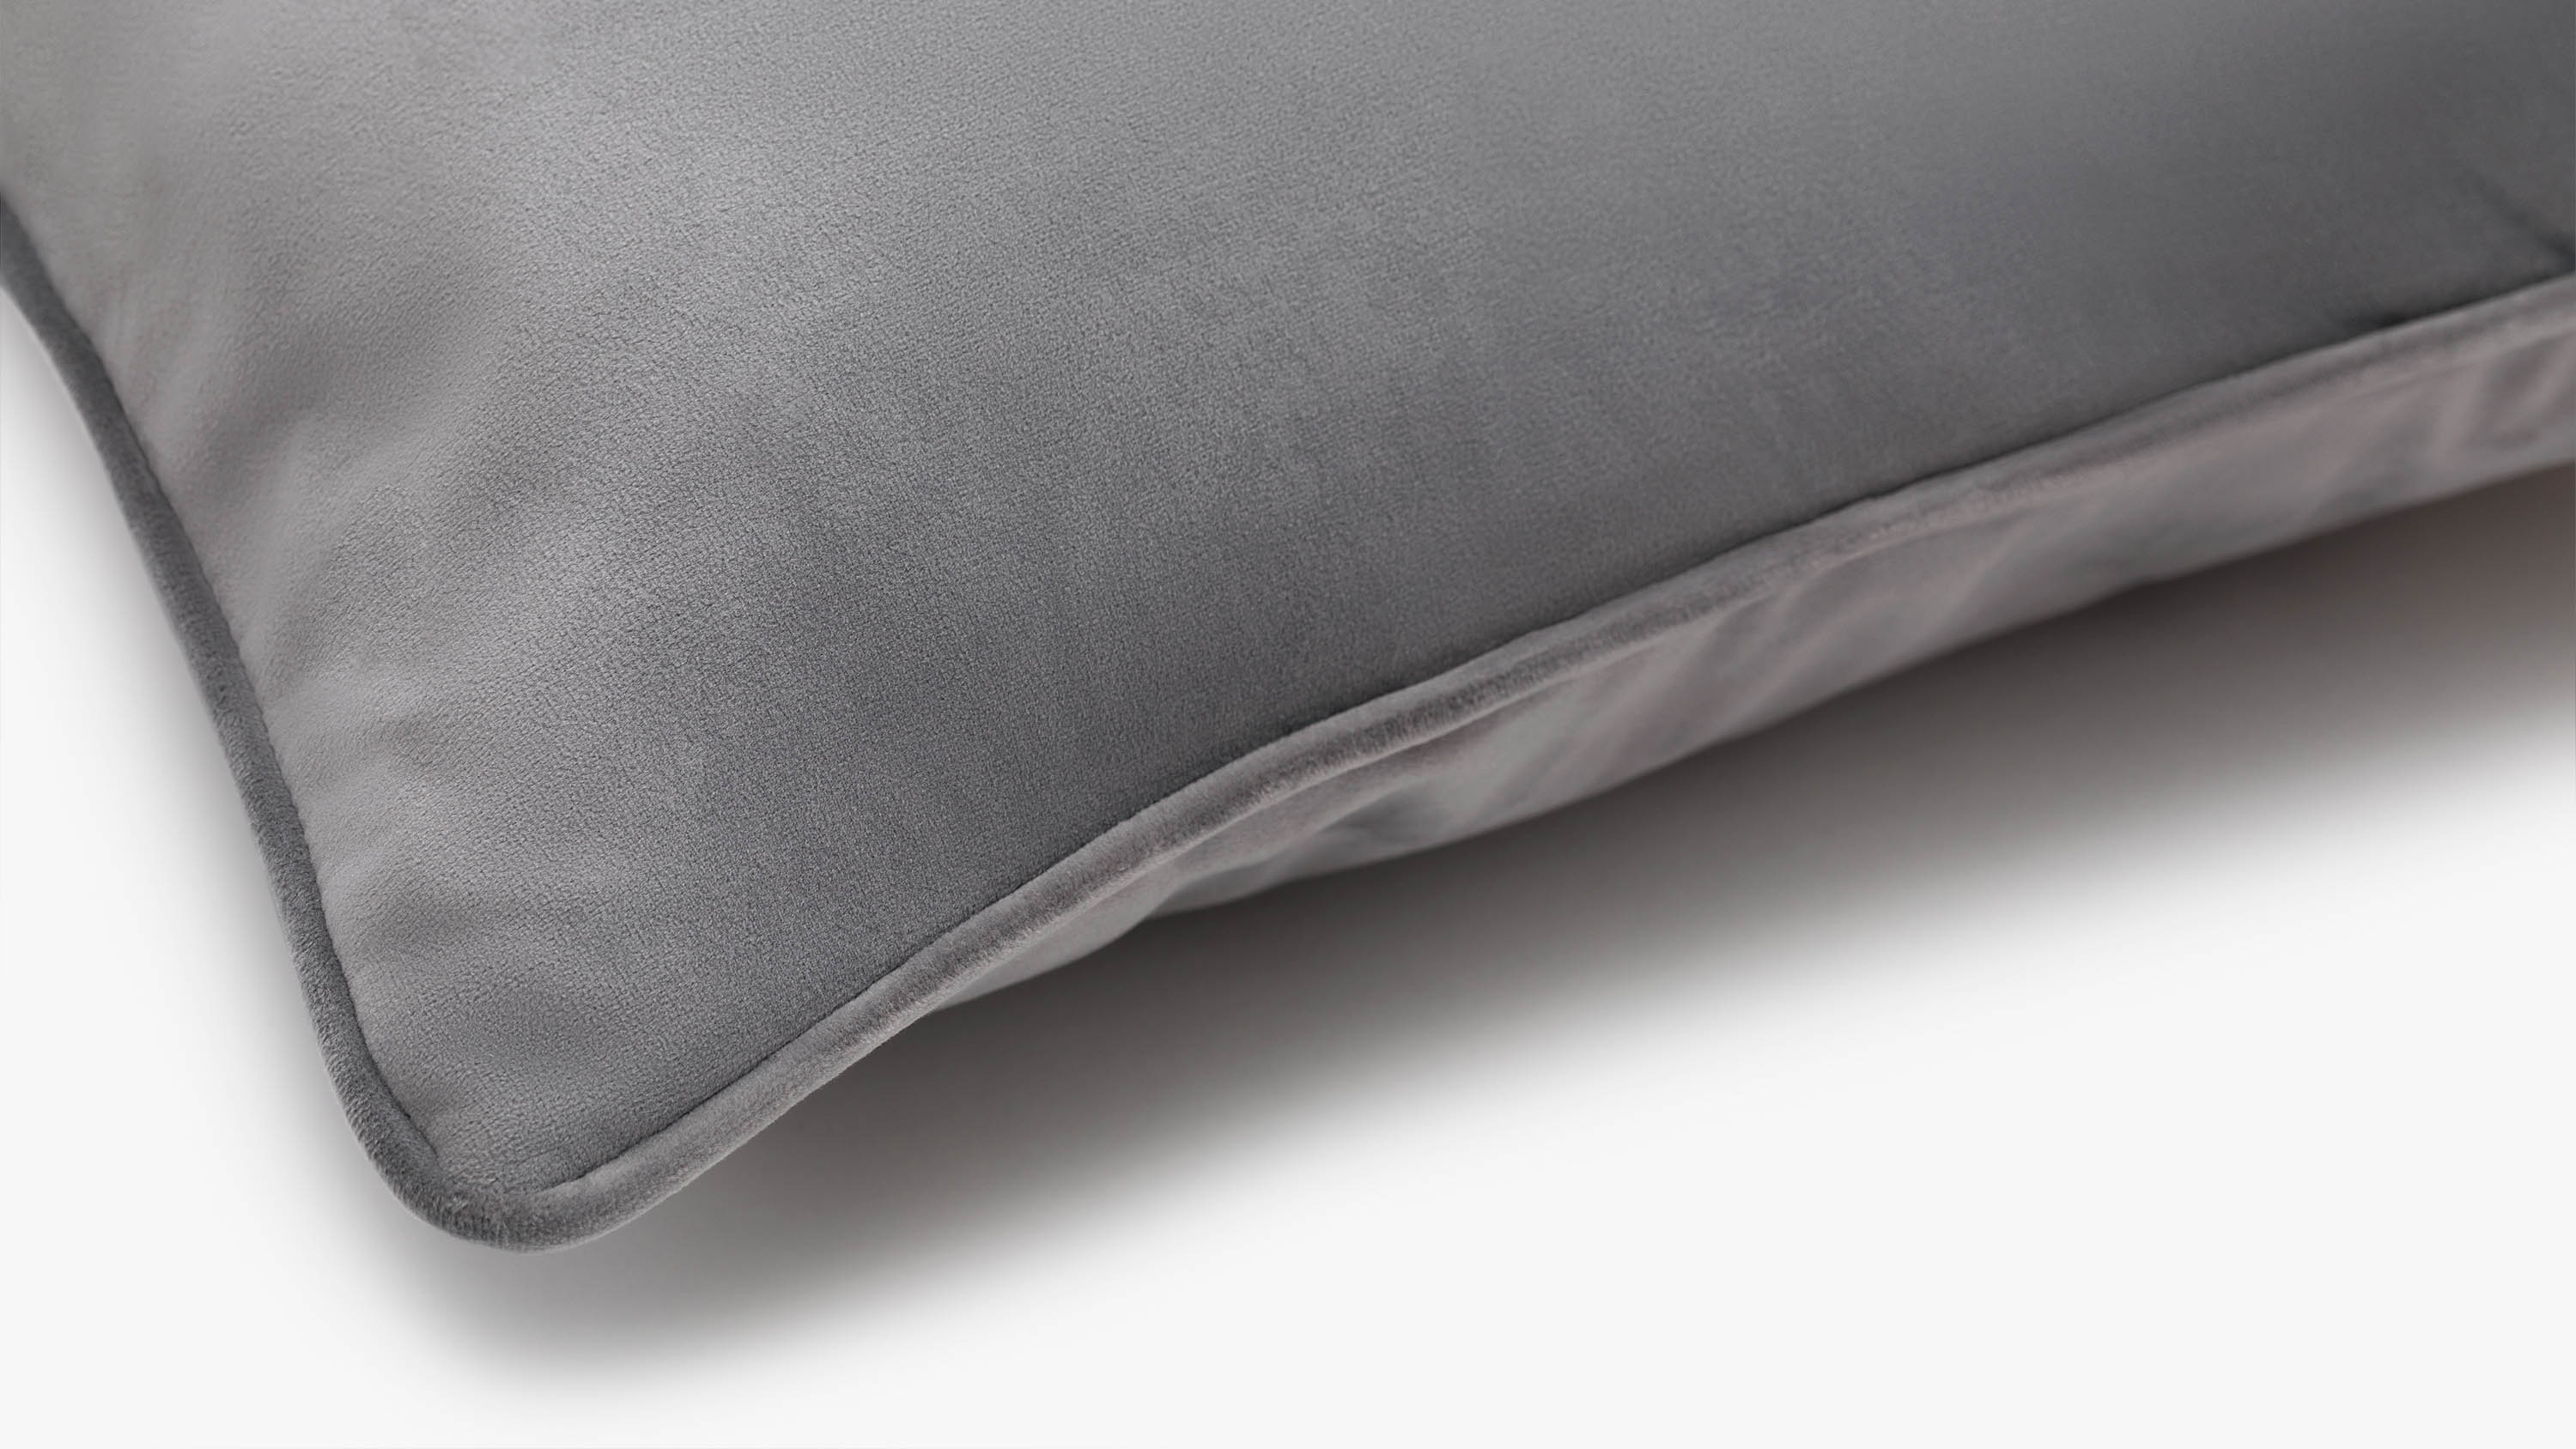 The Eden Velvet Cushion - grey